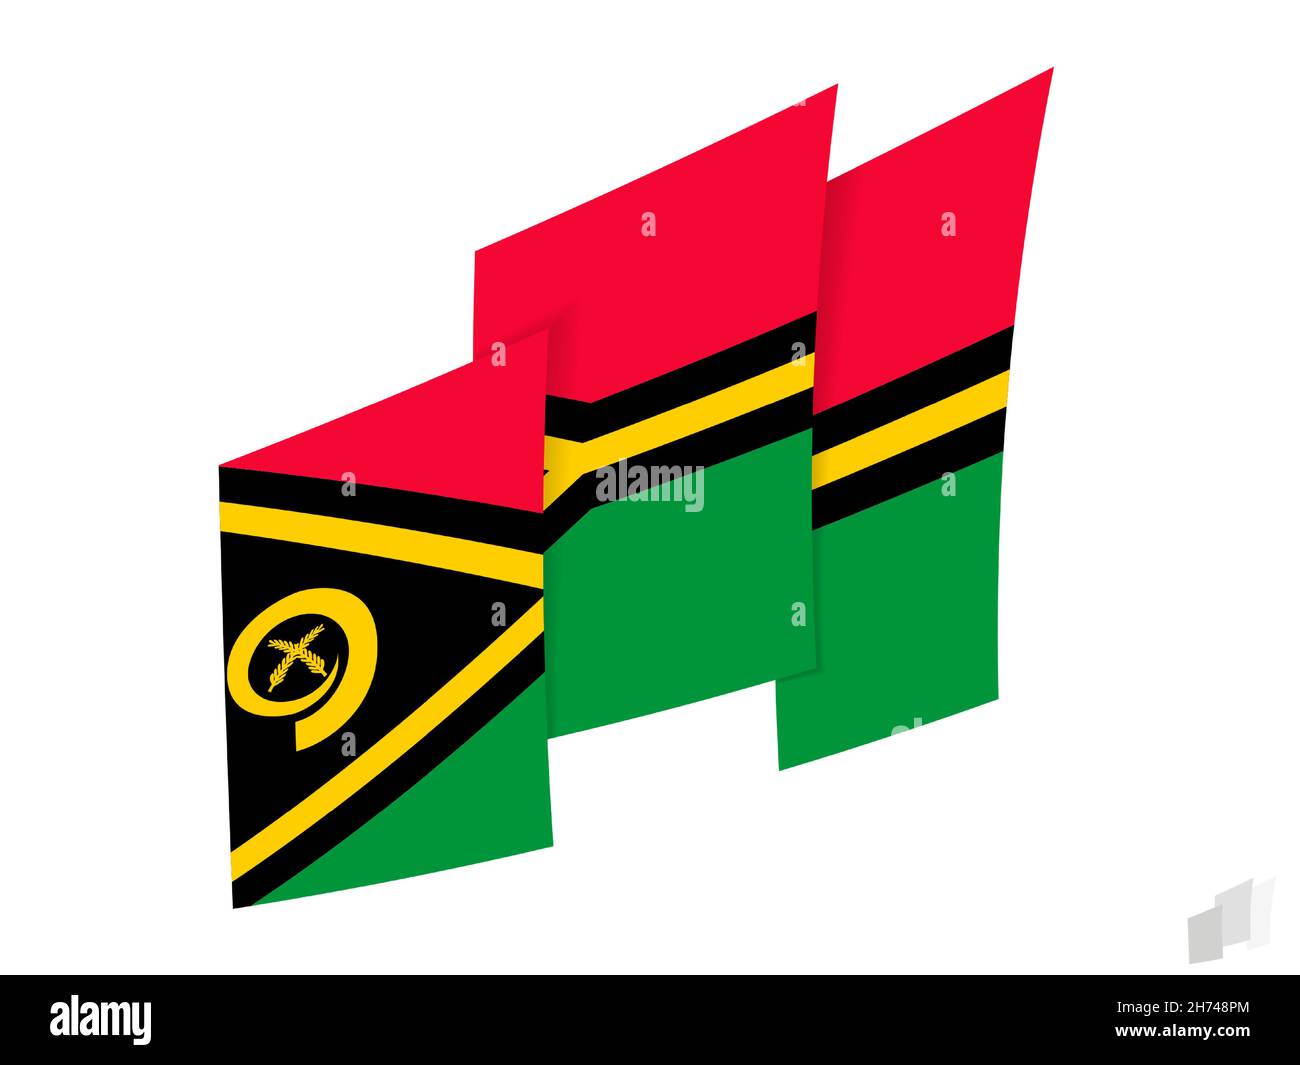 Vanuatu-Flagge in abstraktem Rissdesign. Modernes Design der Vanuatu-Flagge. Vektorsymbol. Stock Vektor